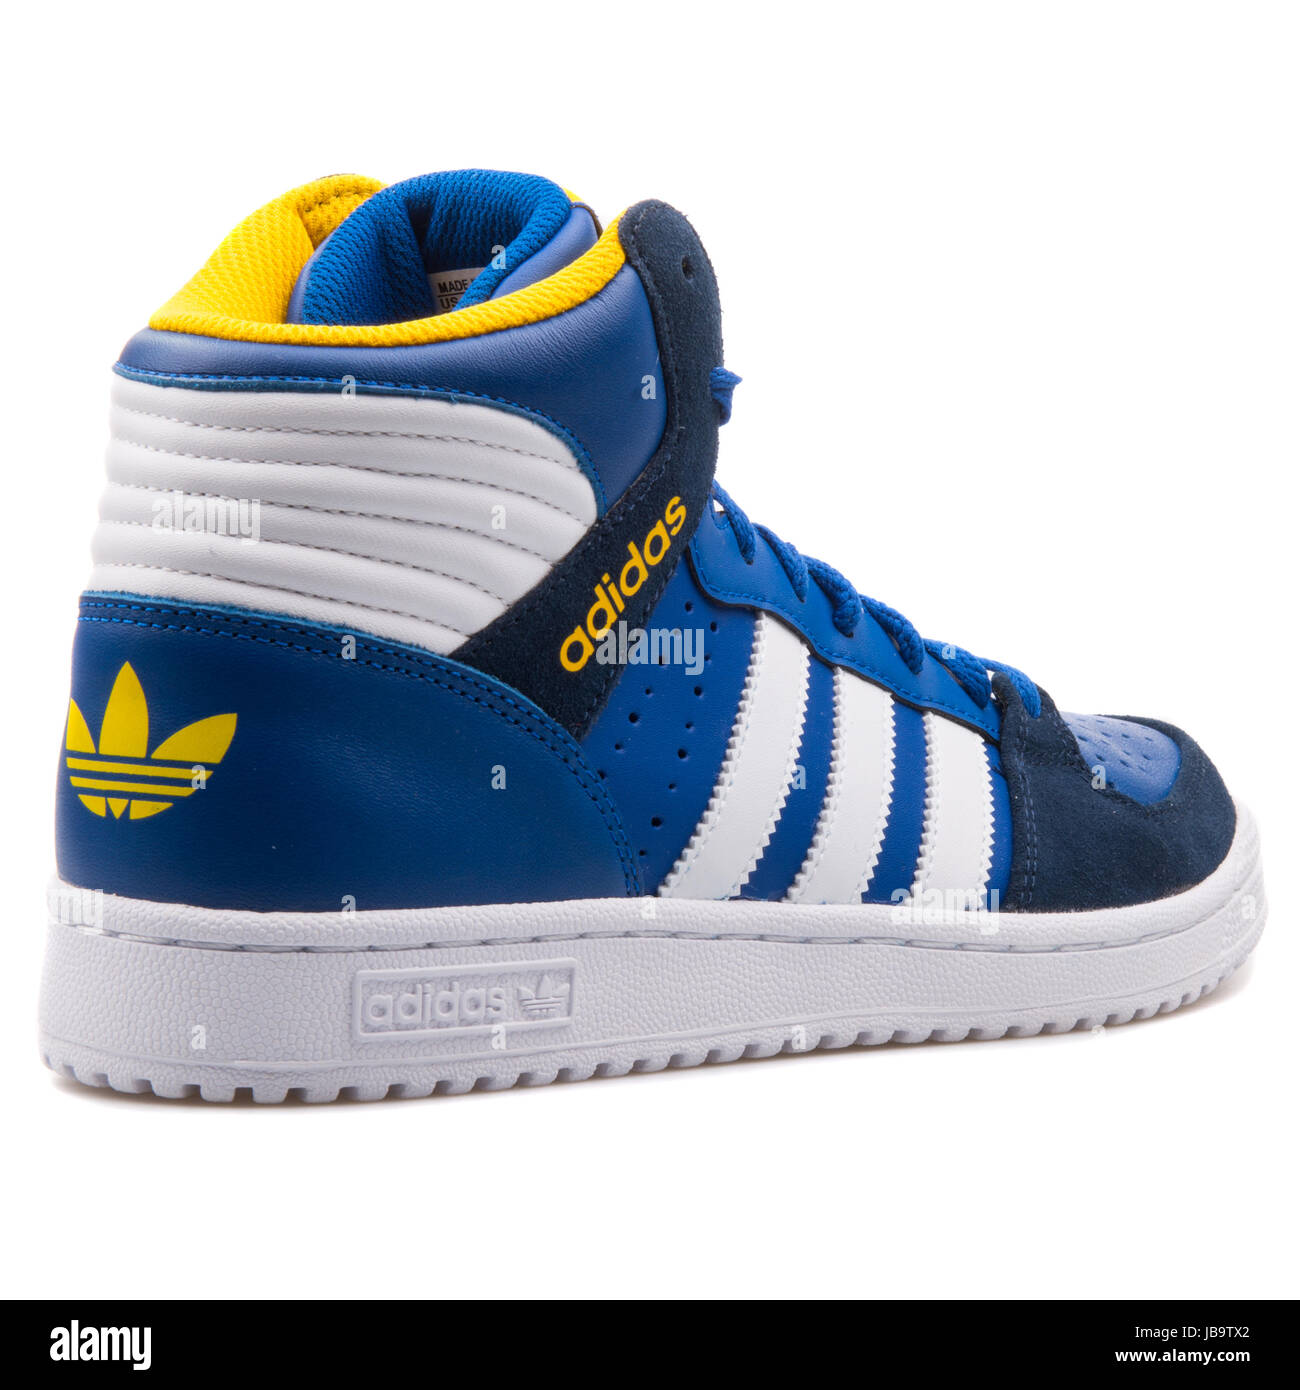 Adidas Pro Spiel 2 blaue, weiße und gelbe Männer Sport-Sneaker - B35364  Stockfotografie - Alamy